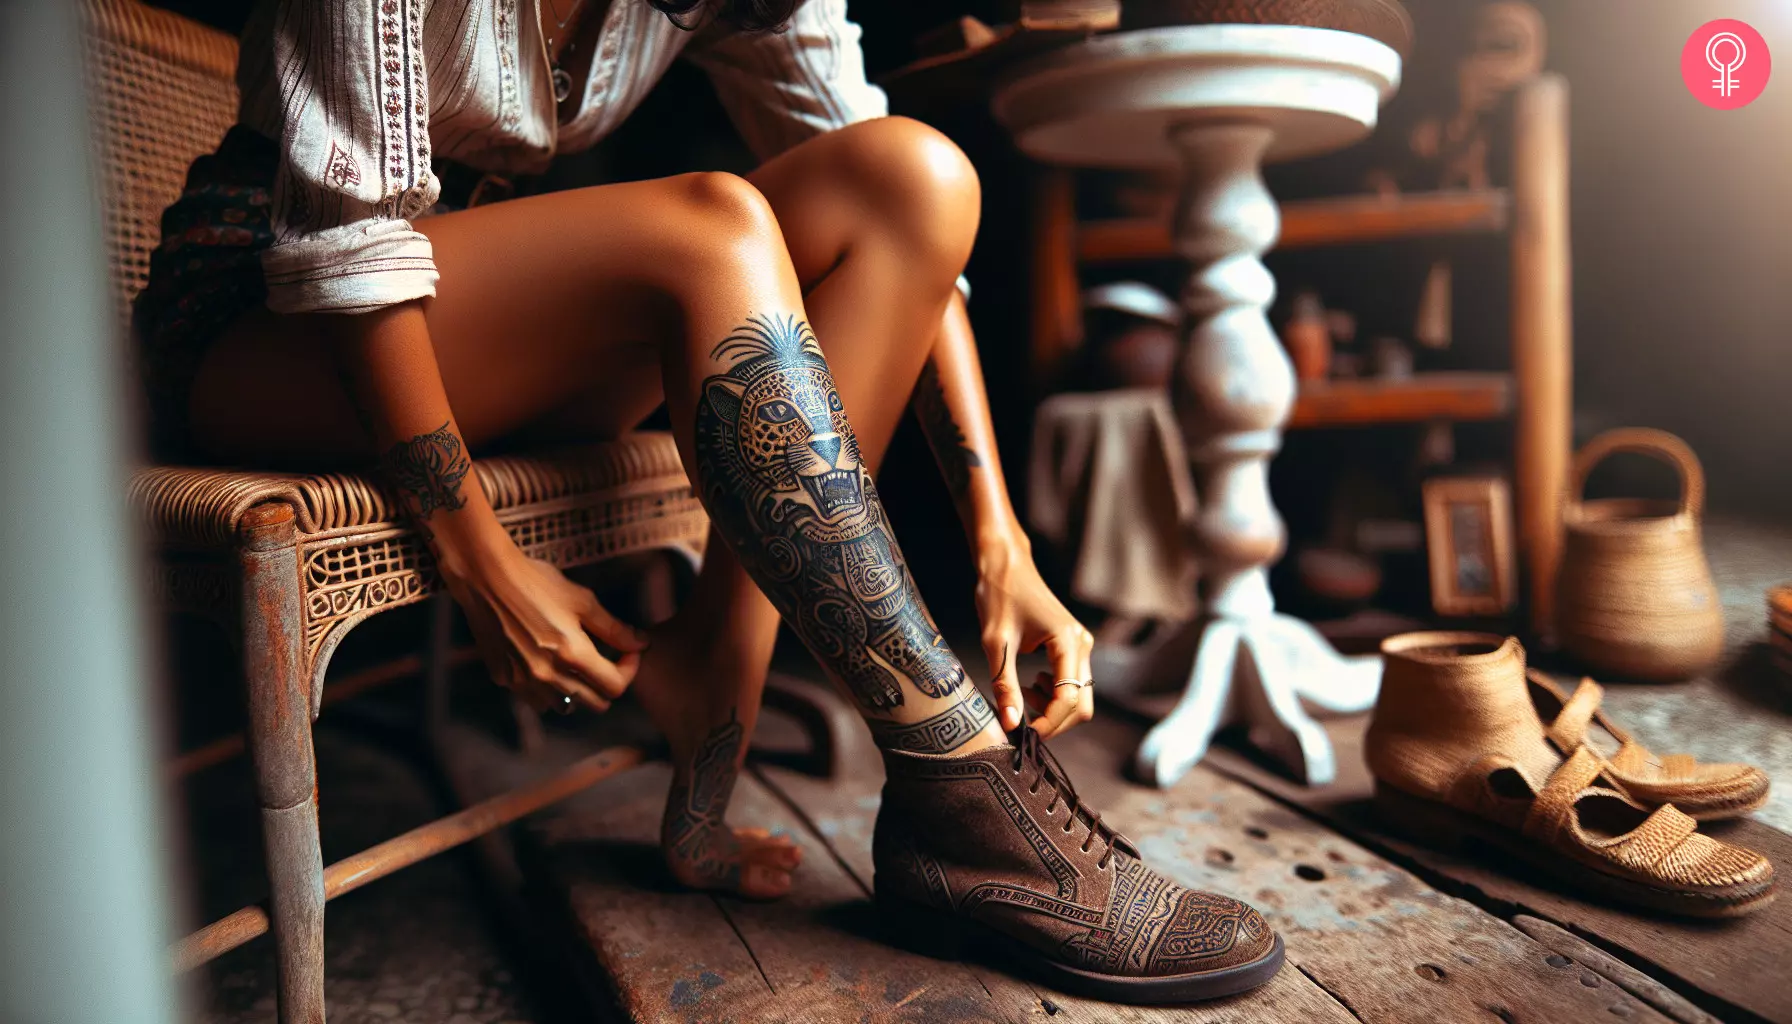 A traditional Mayan jaguar tattoo on a woman’s leg